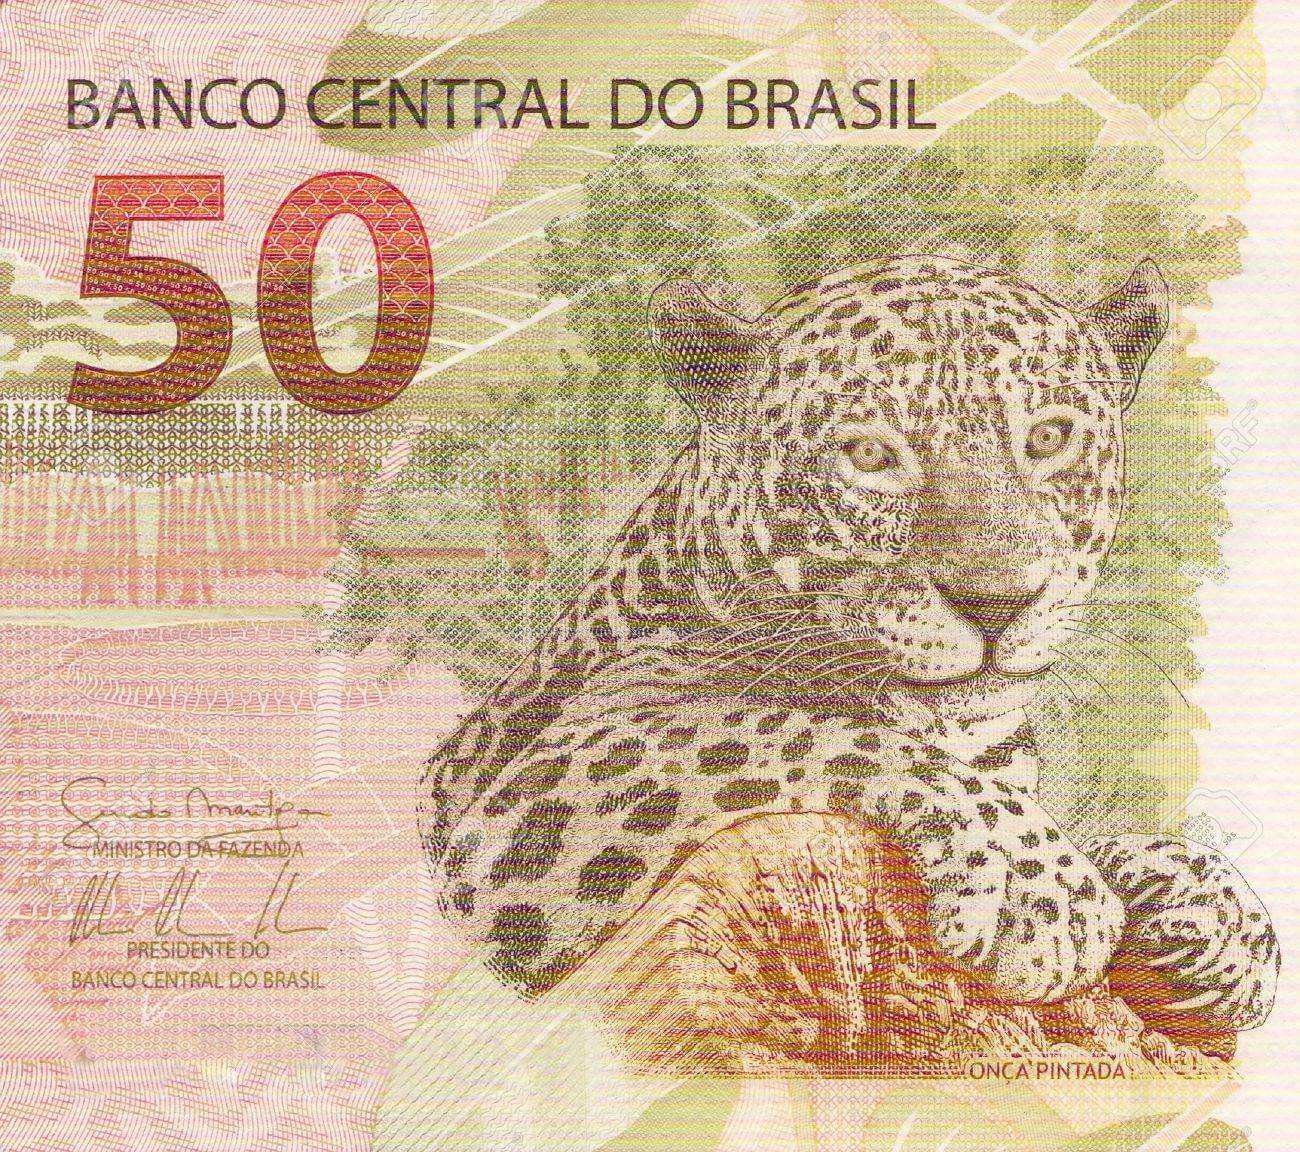 Банкнота 50 бразильских реалов